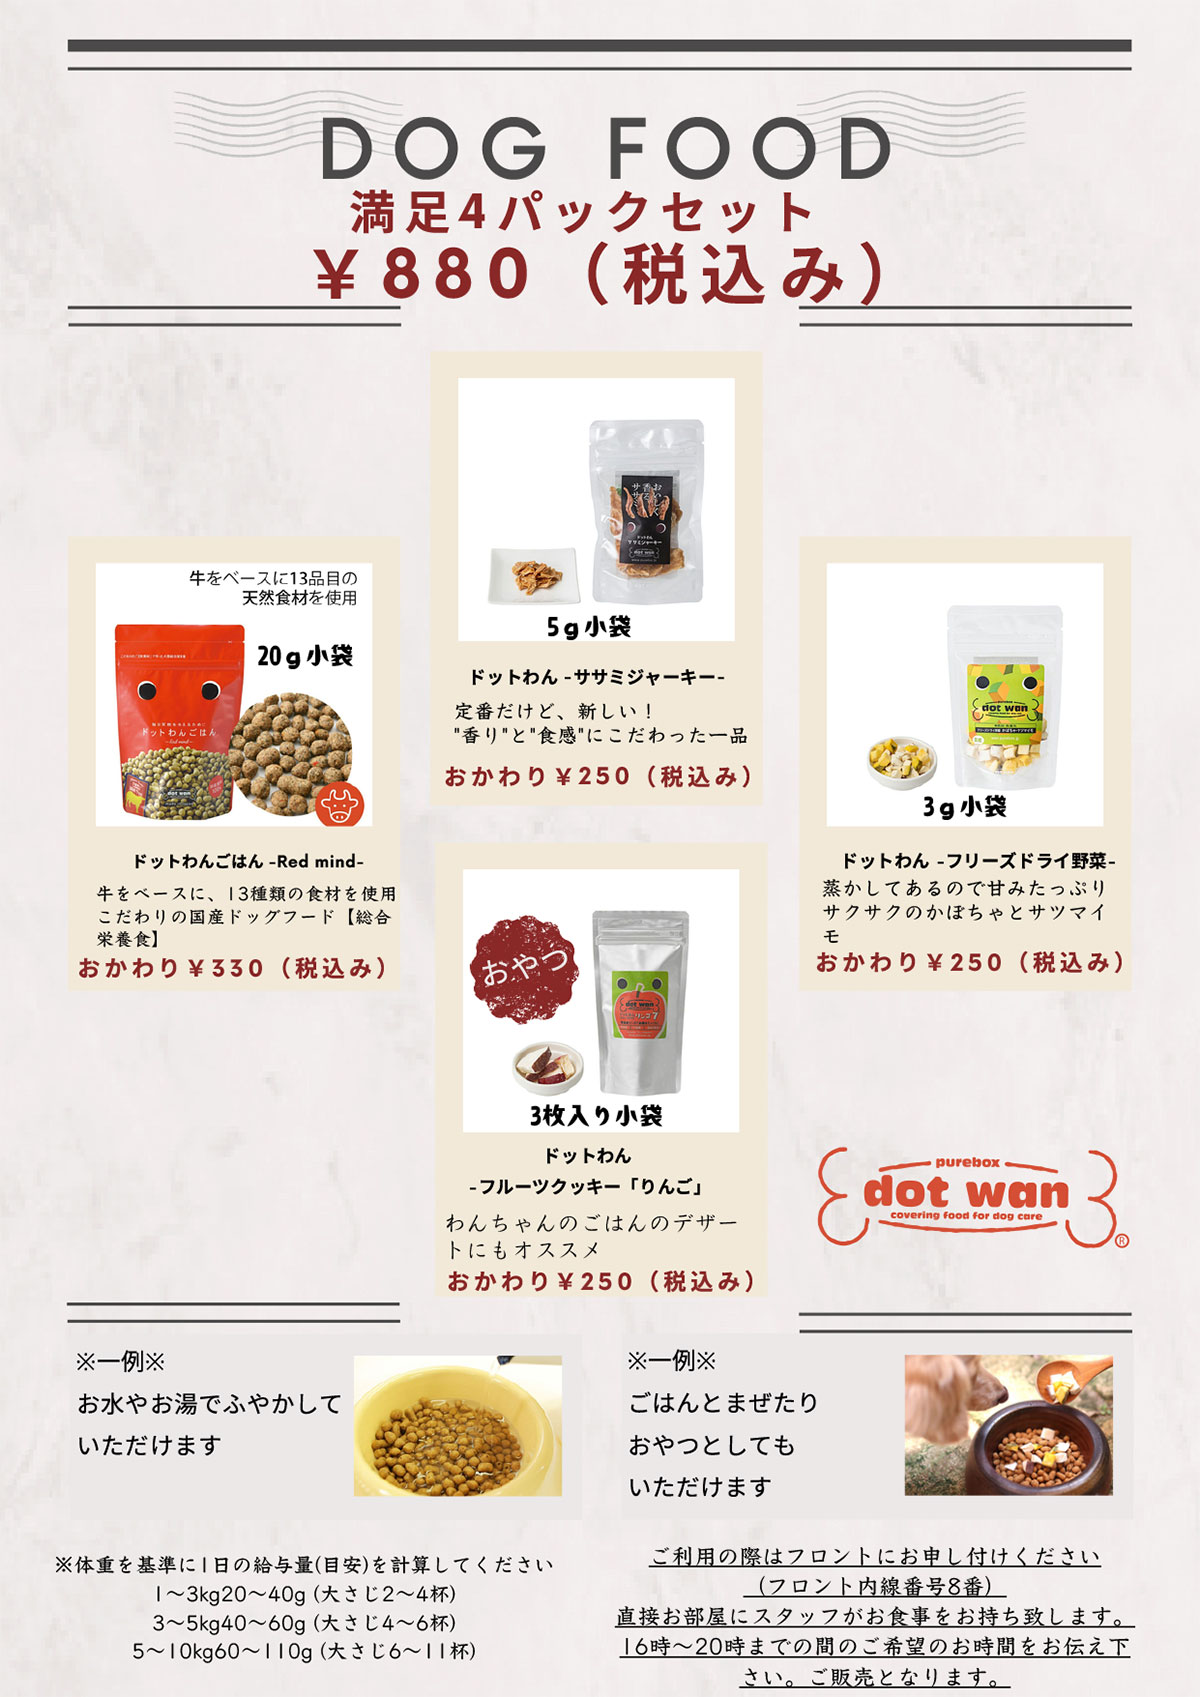 Information on dog Food